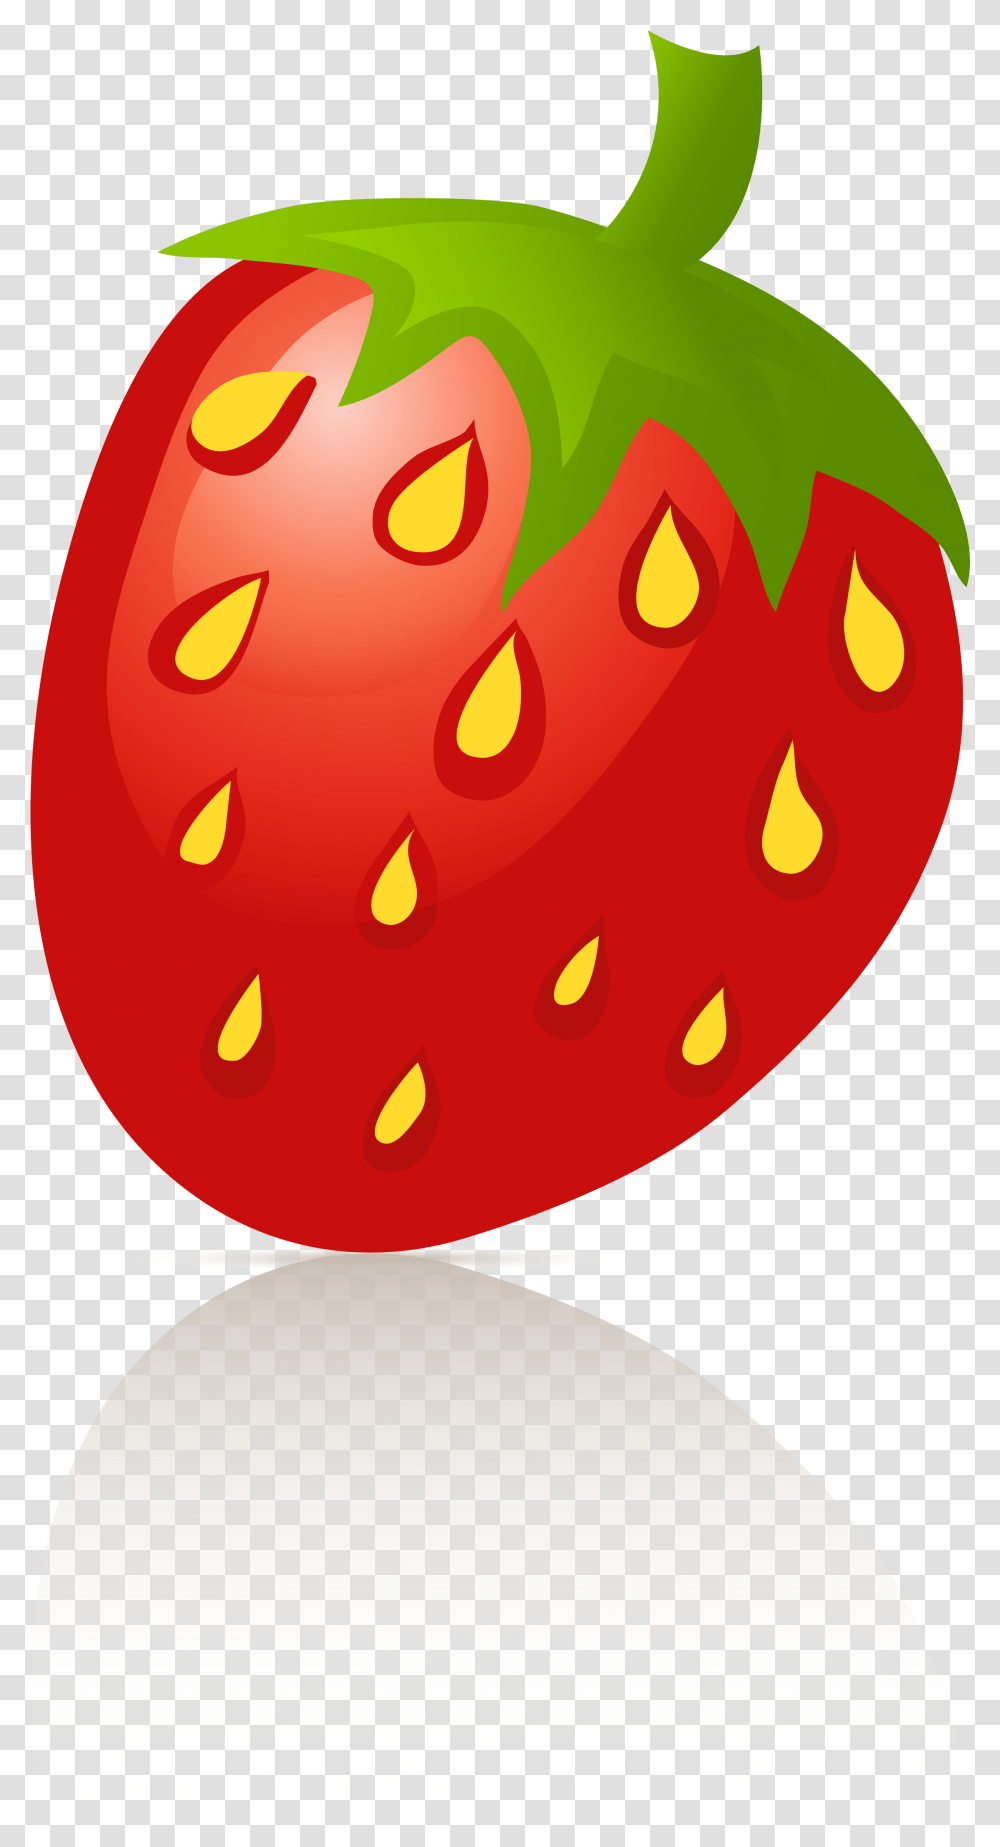 Strawberry Sigel Bell Pepper Clip Art, Food, Plant, Egg, Fruit Transparent Png